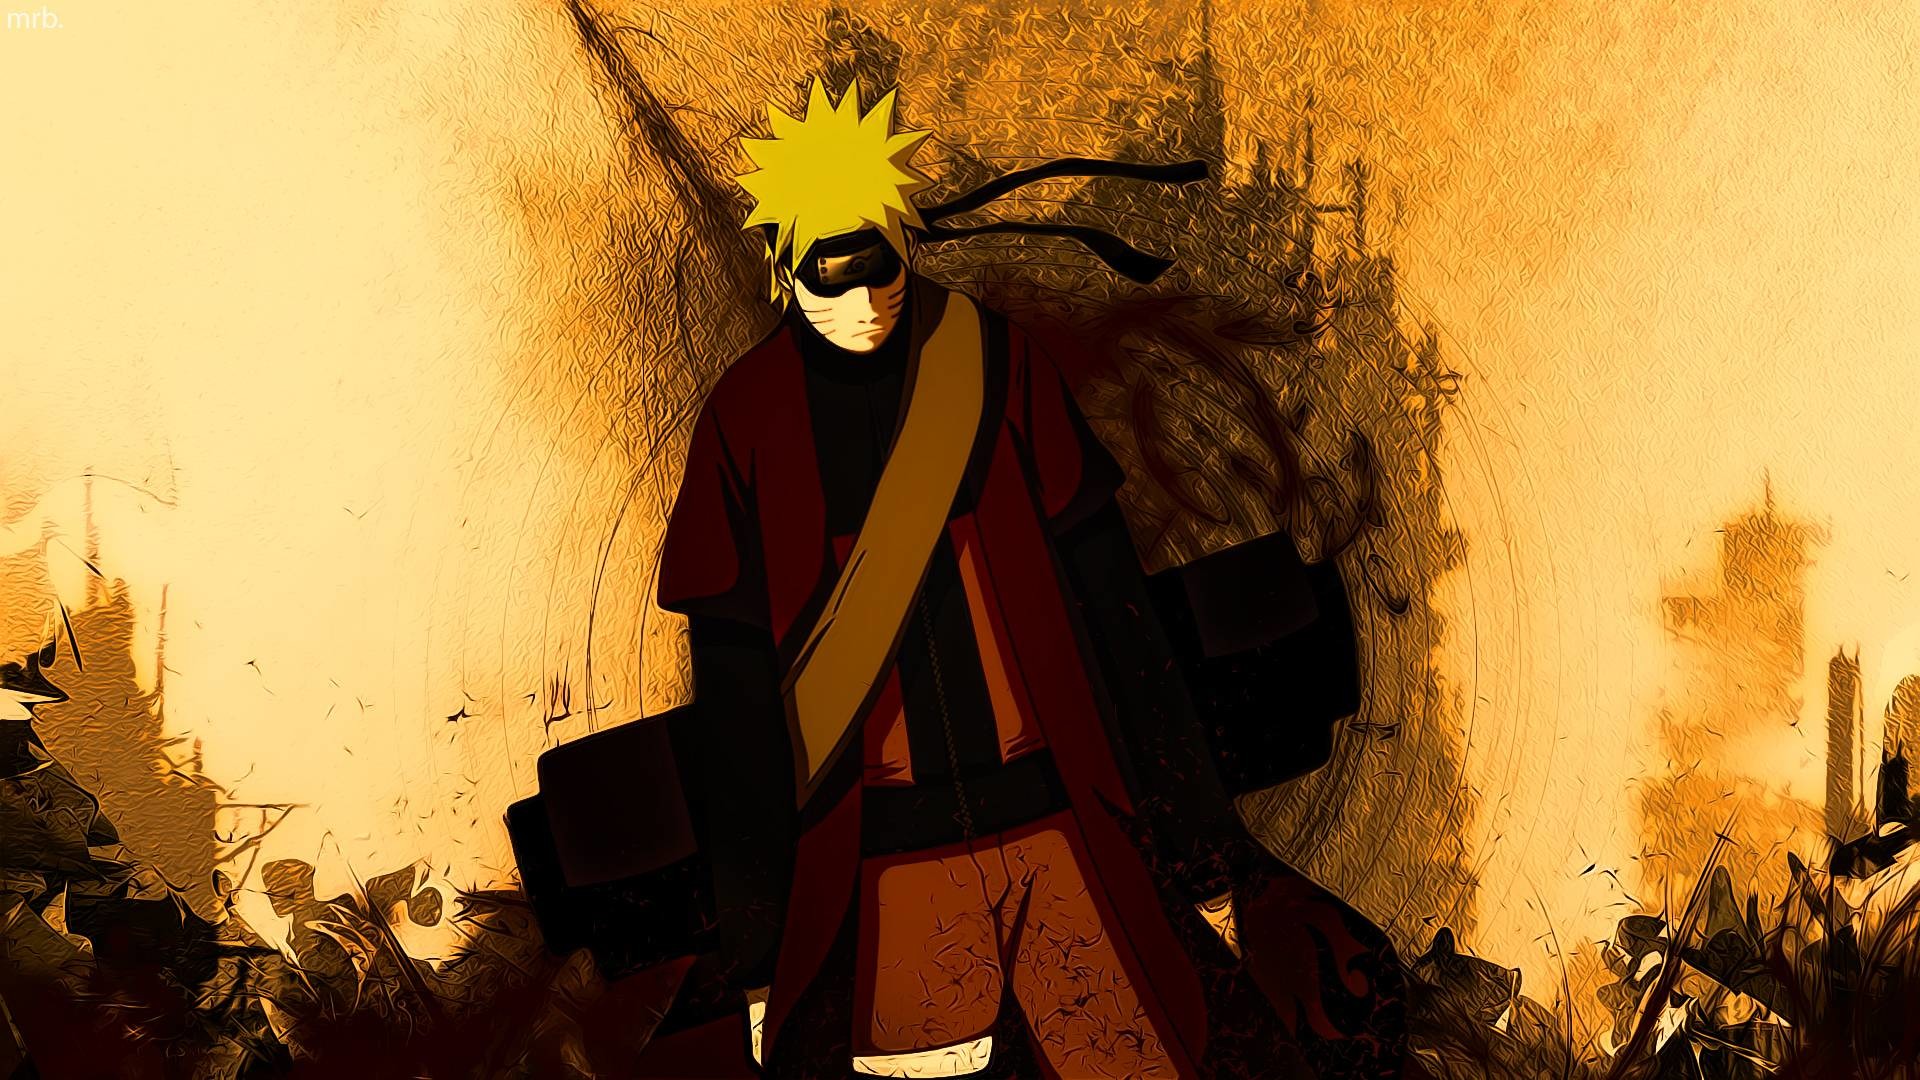 1920x1080 10+ ideeÃ«n over Naruto Hd Wallpaper op Pinterest - Wallpapers de